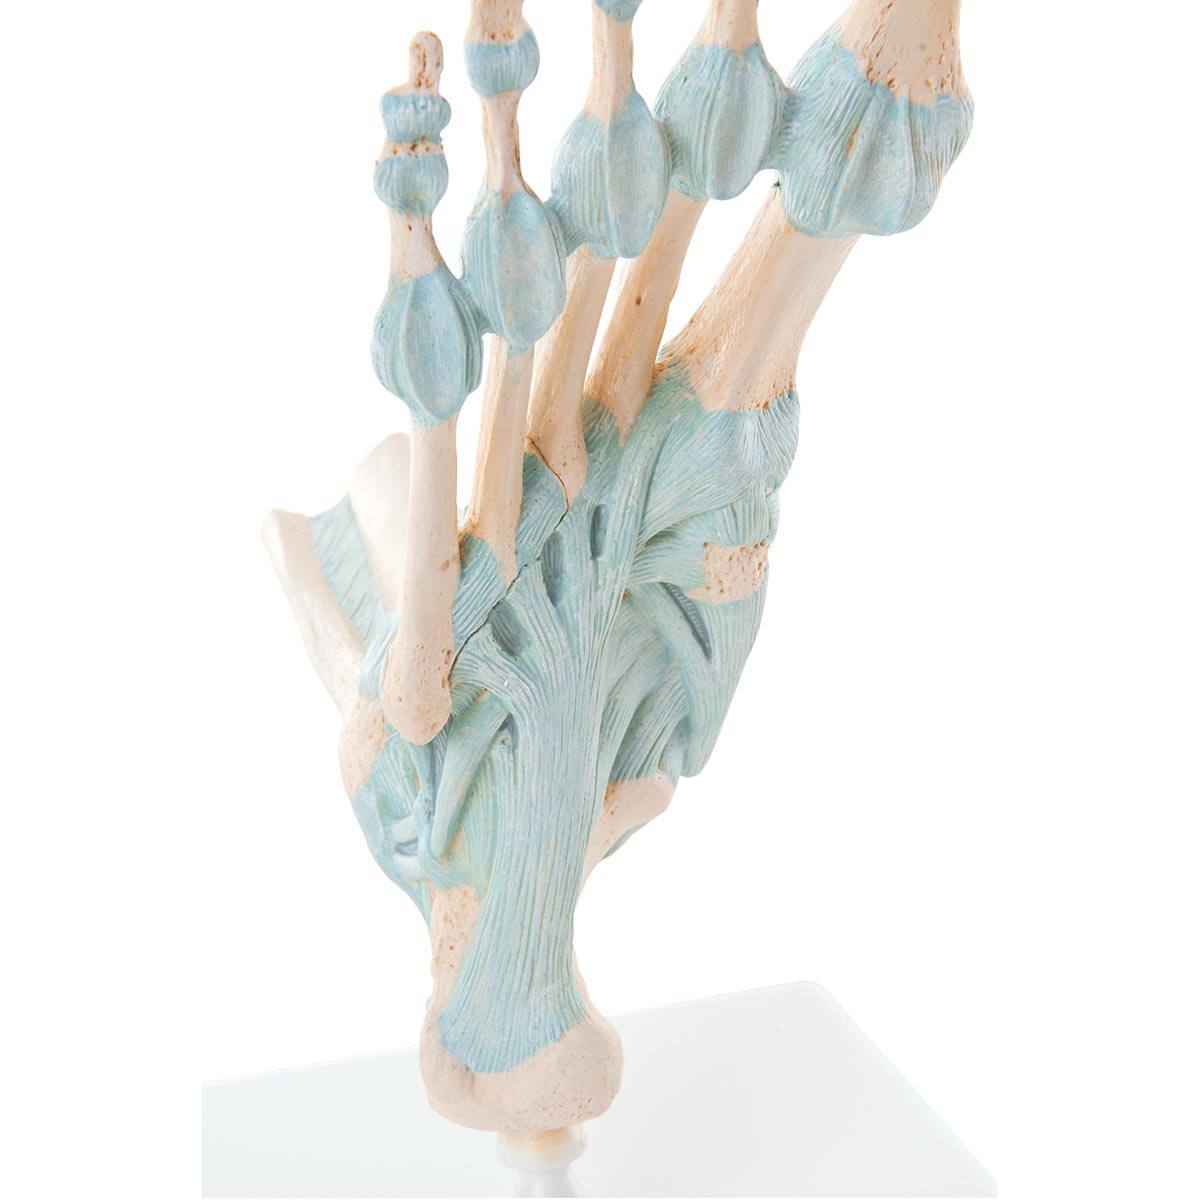 Modell des Fußskeletts mit Bändern